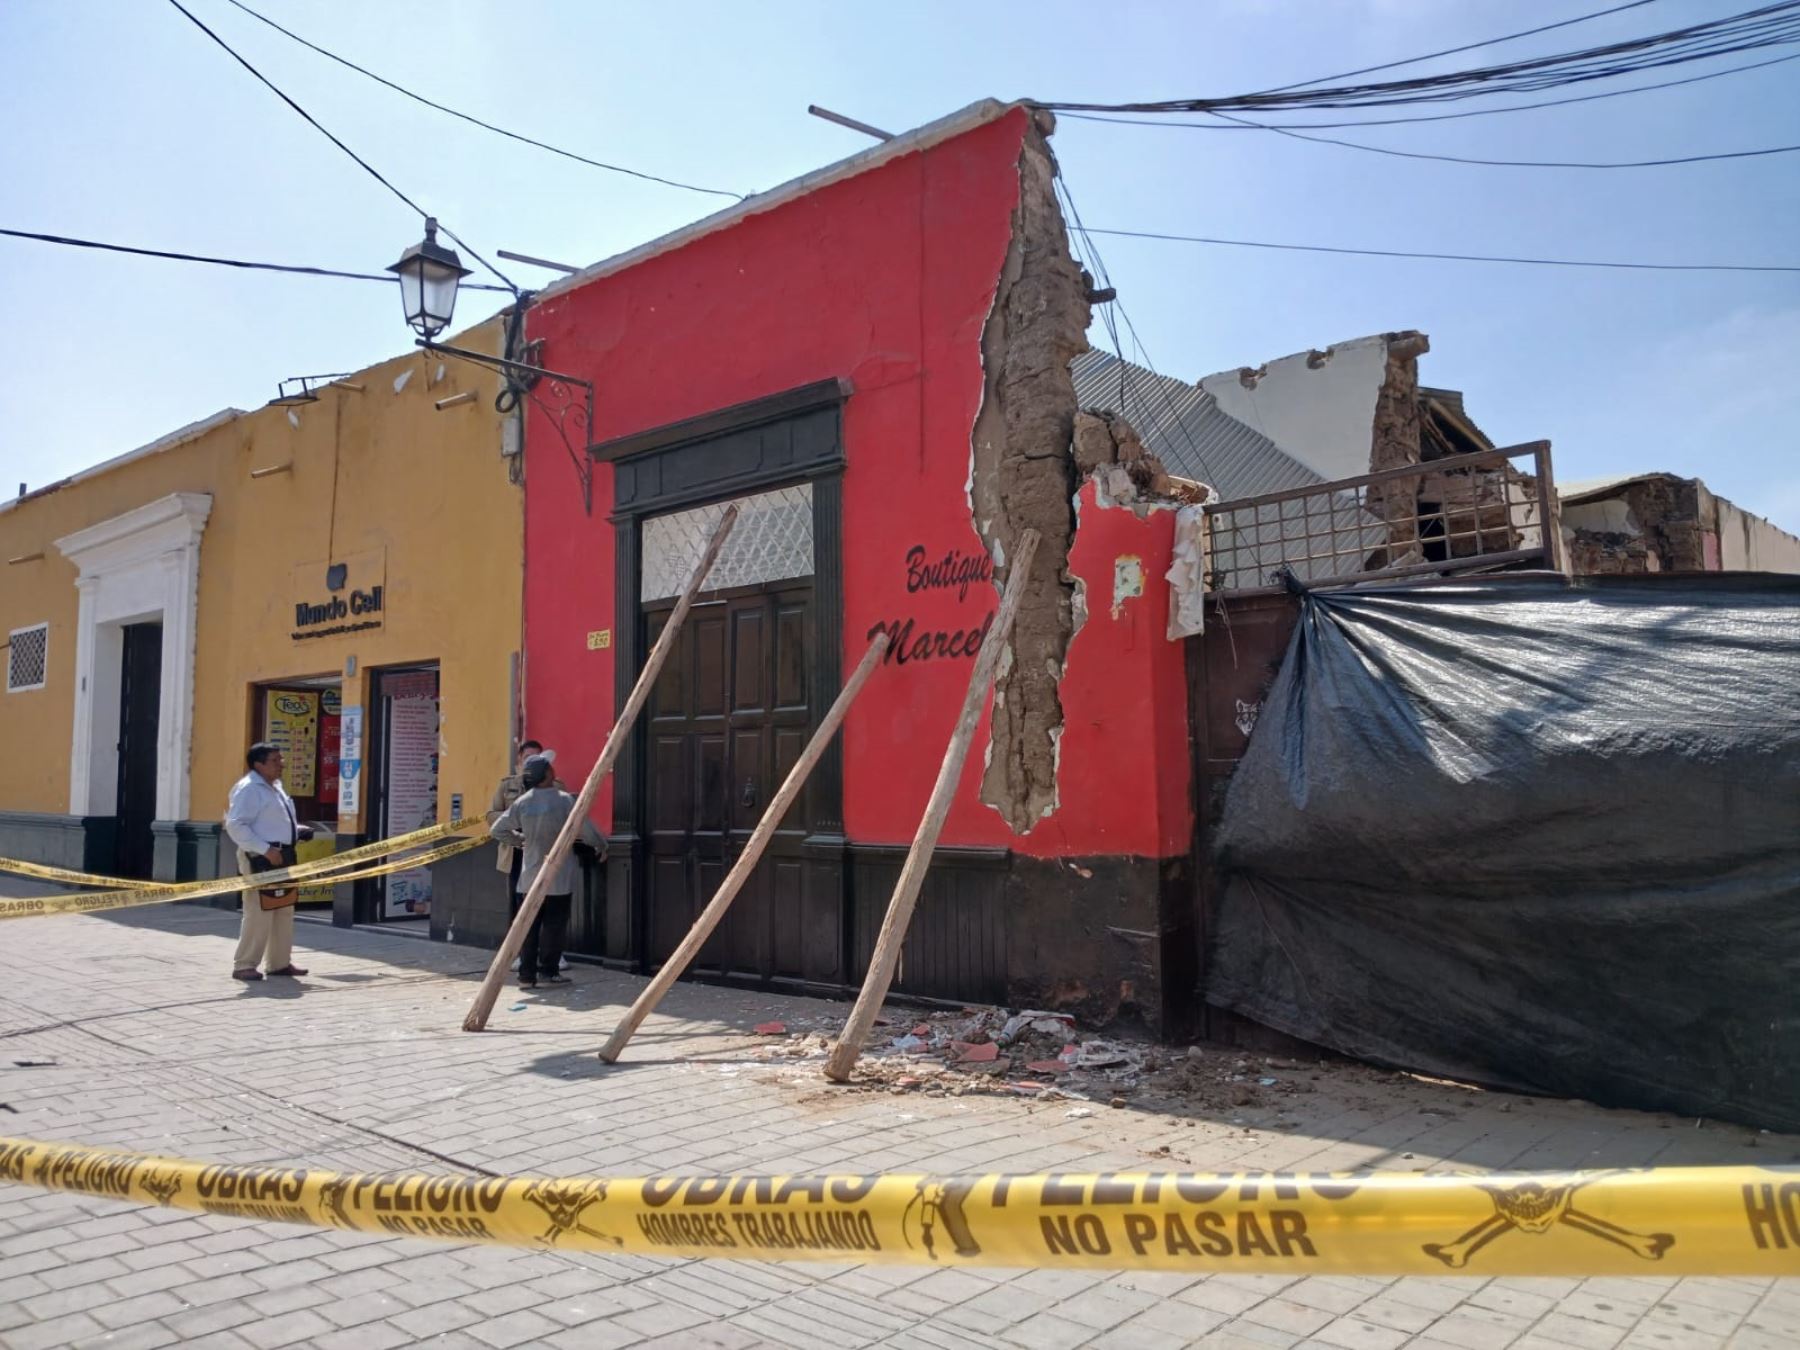 Al menos 20 casonas del centro histórico de Trujillo están en muy alto riesgo de colapso, alerta la Dirección Desconcentrada de Cultura de La Libertad.